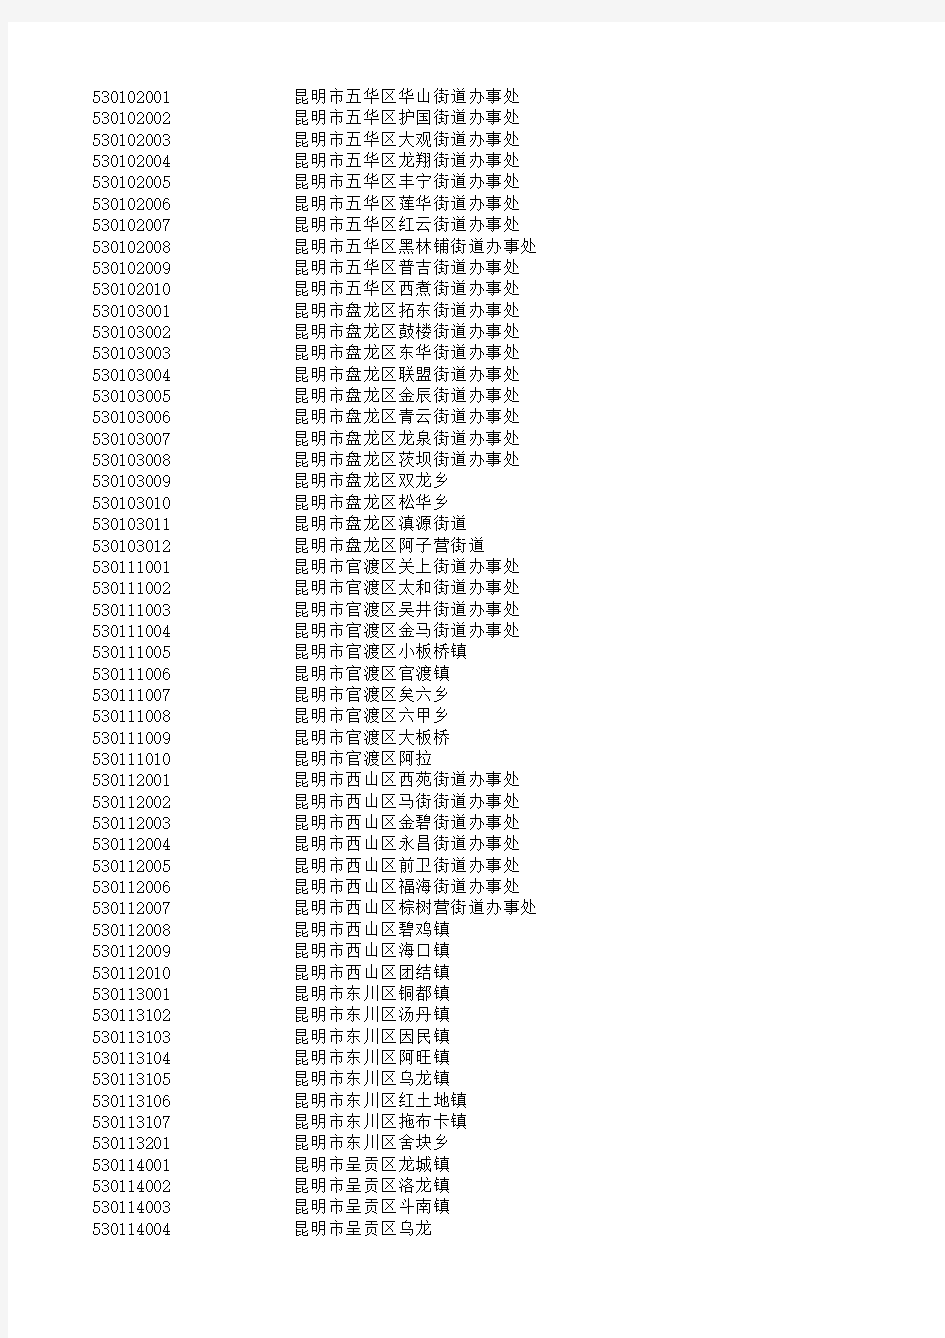 云南省1371个乡镇行政区划代码(2013)